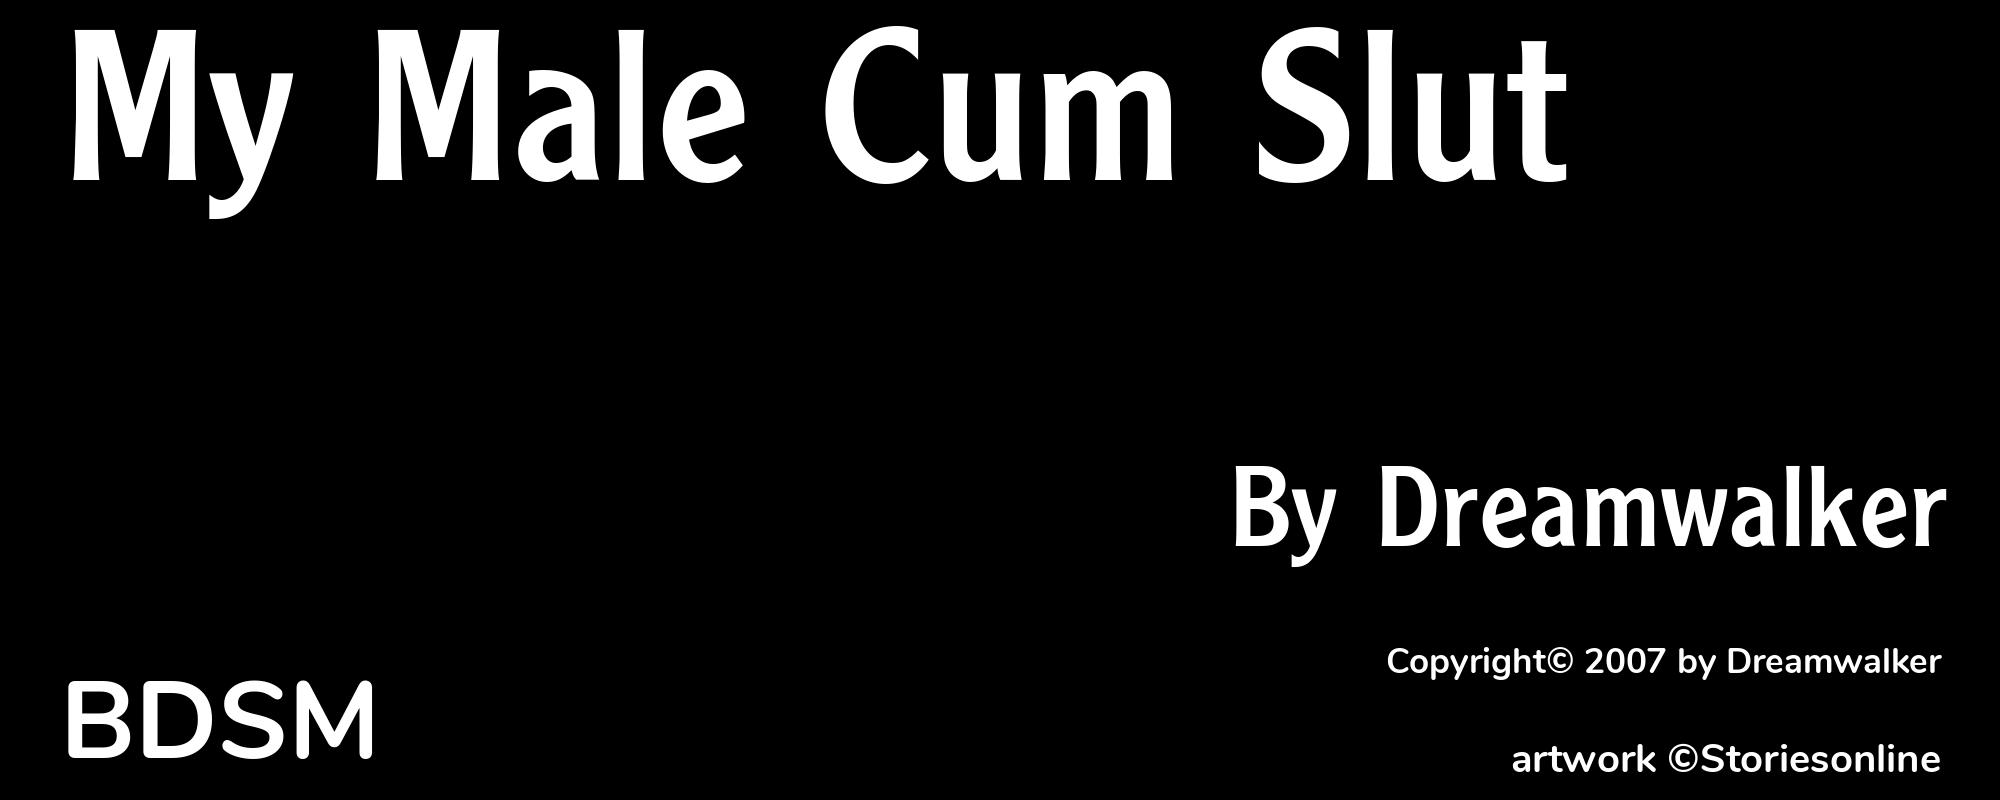 My Male Cum Slut - Cover